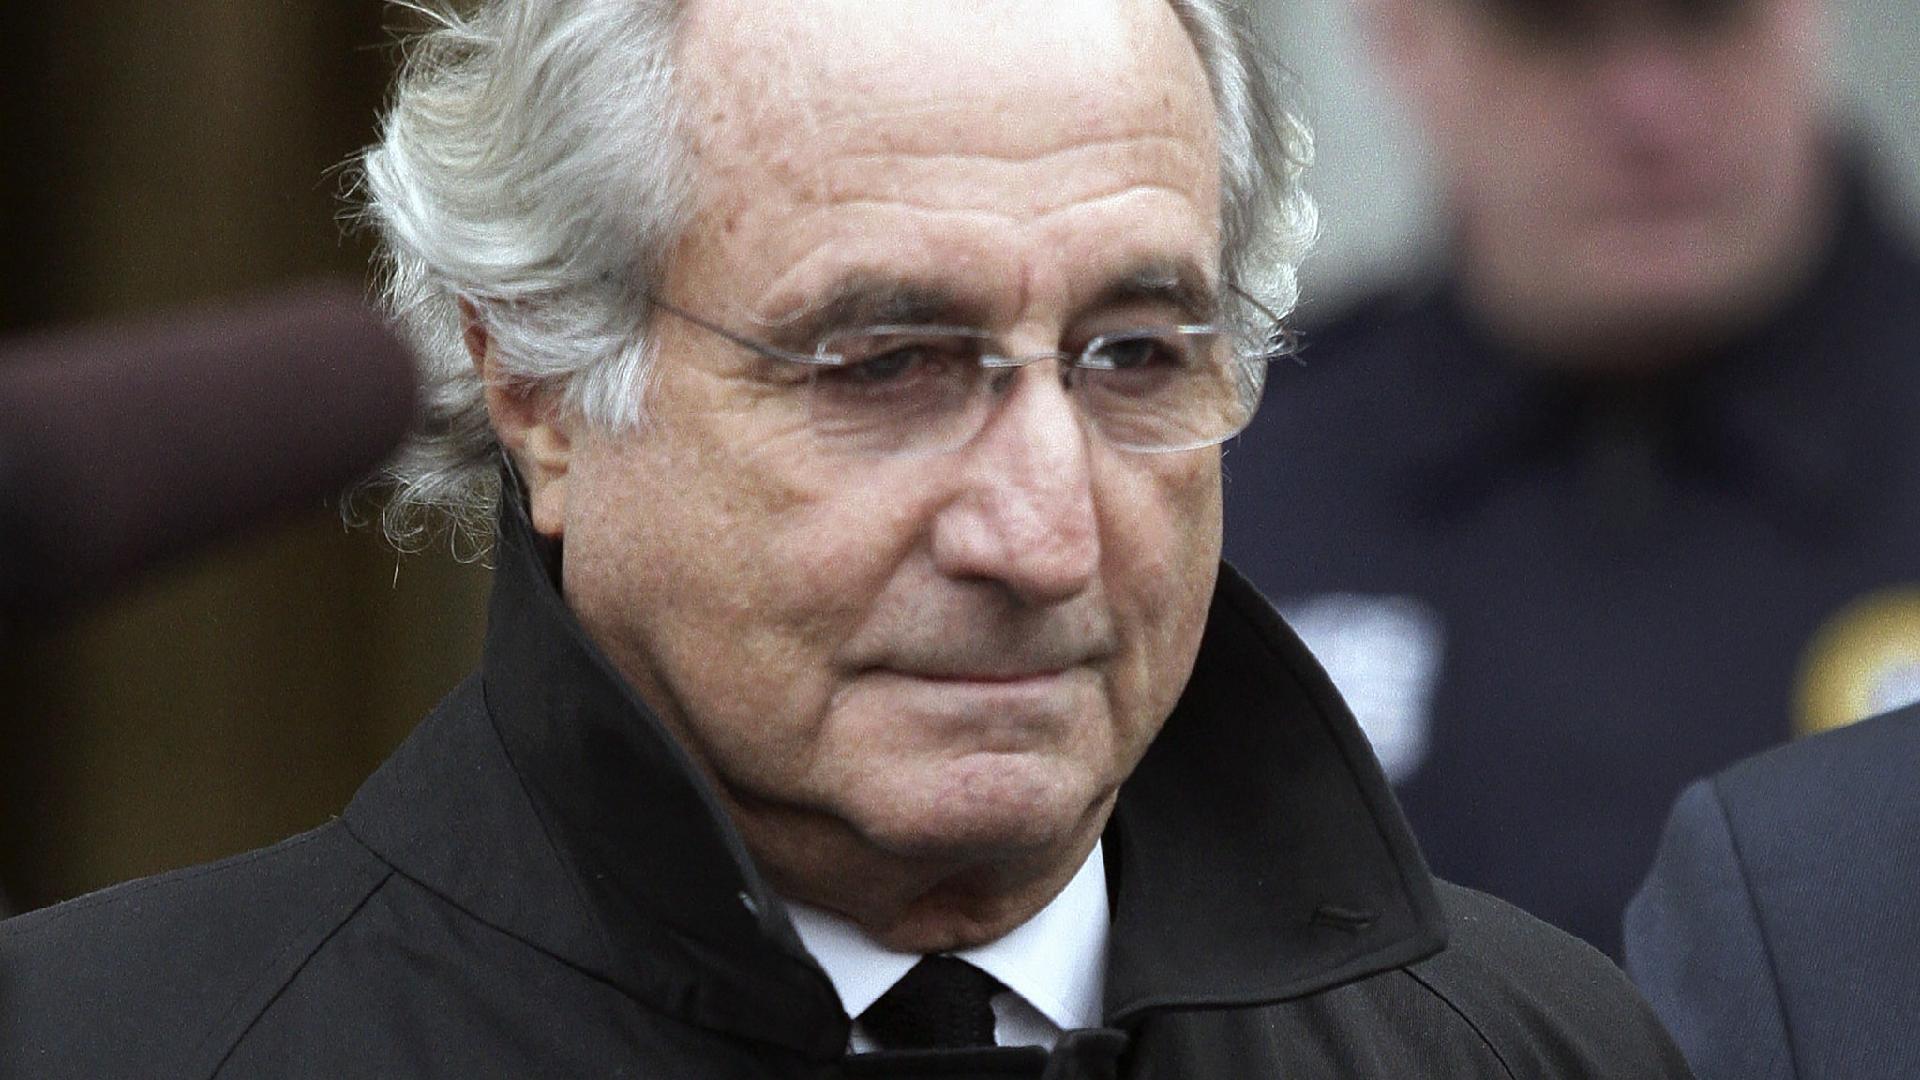 Ponzi Scheme Architect Bernie Madoff Dies In Prison At 82 Cgtn 